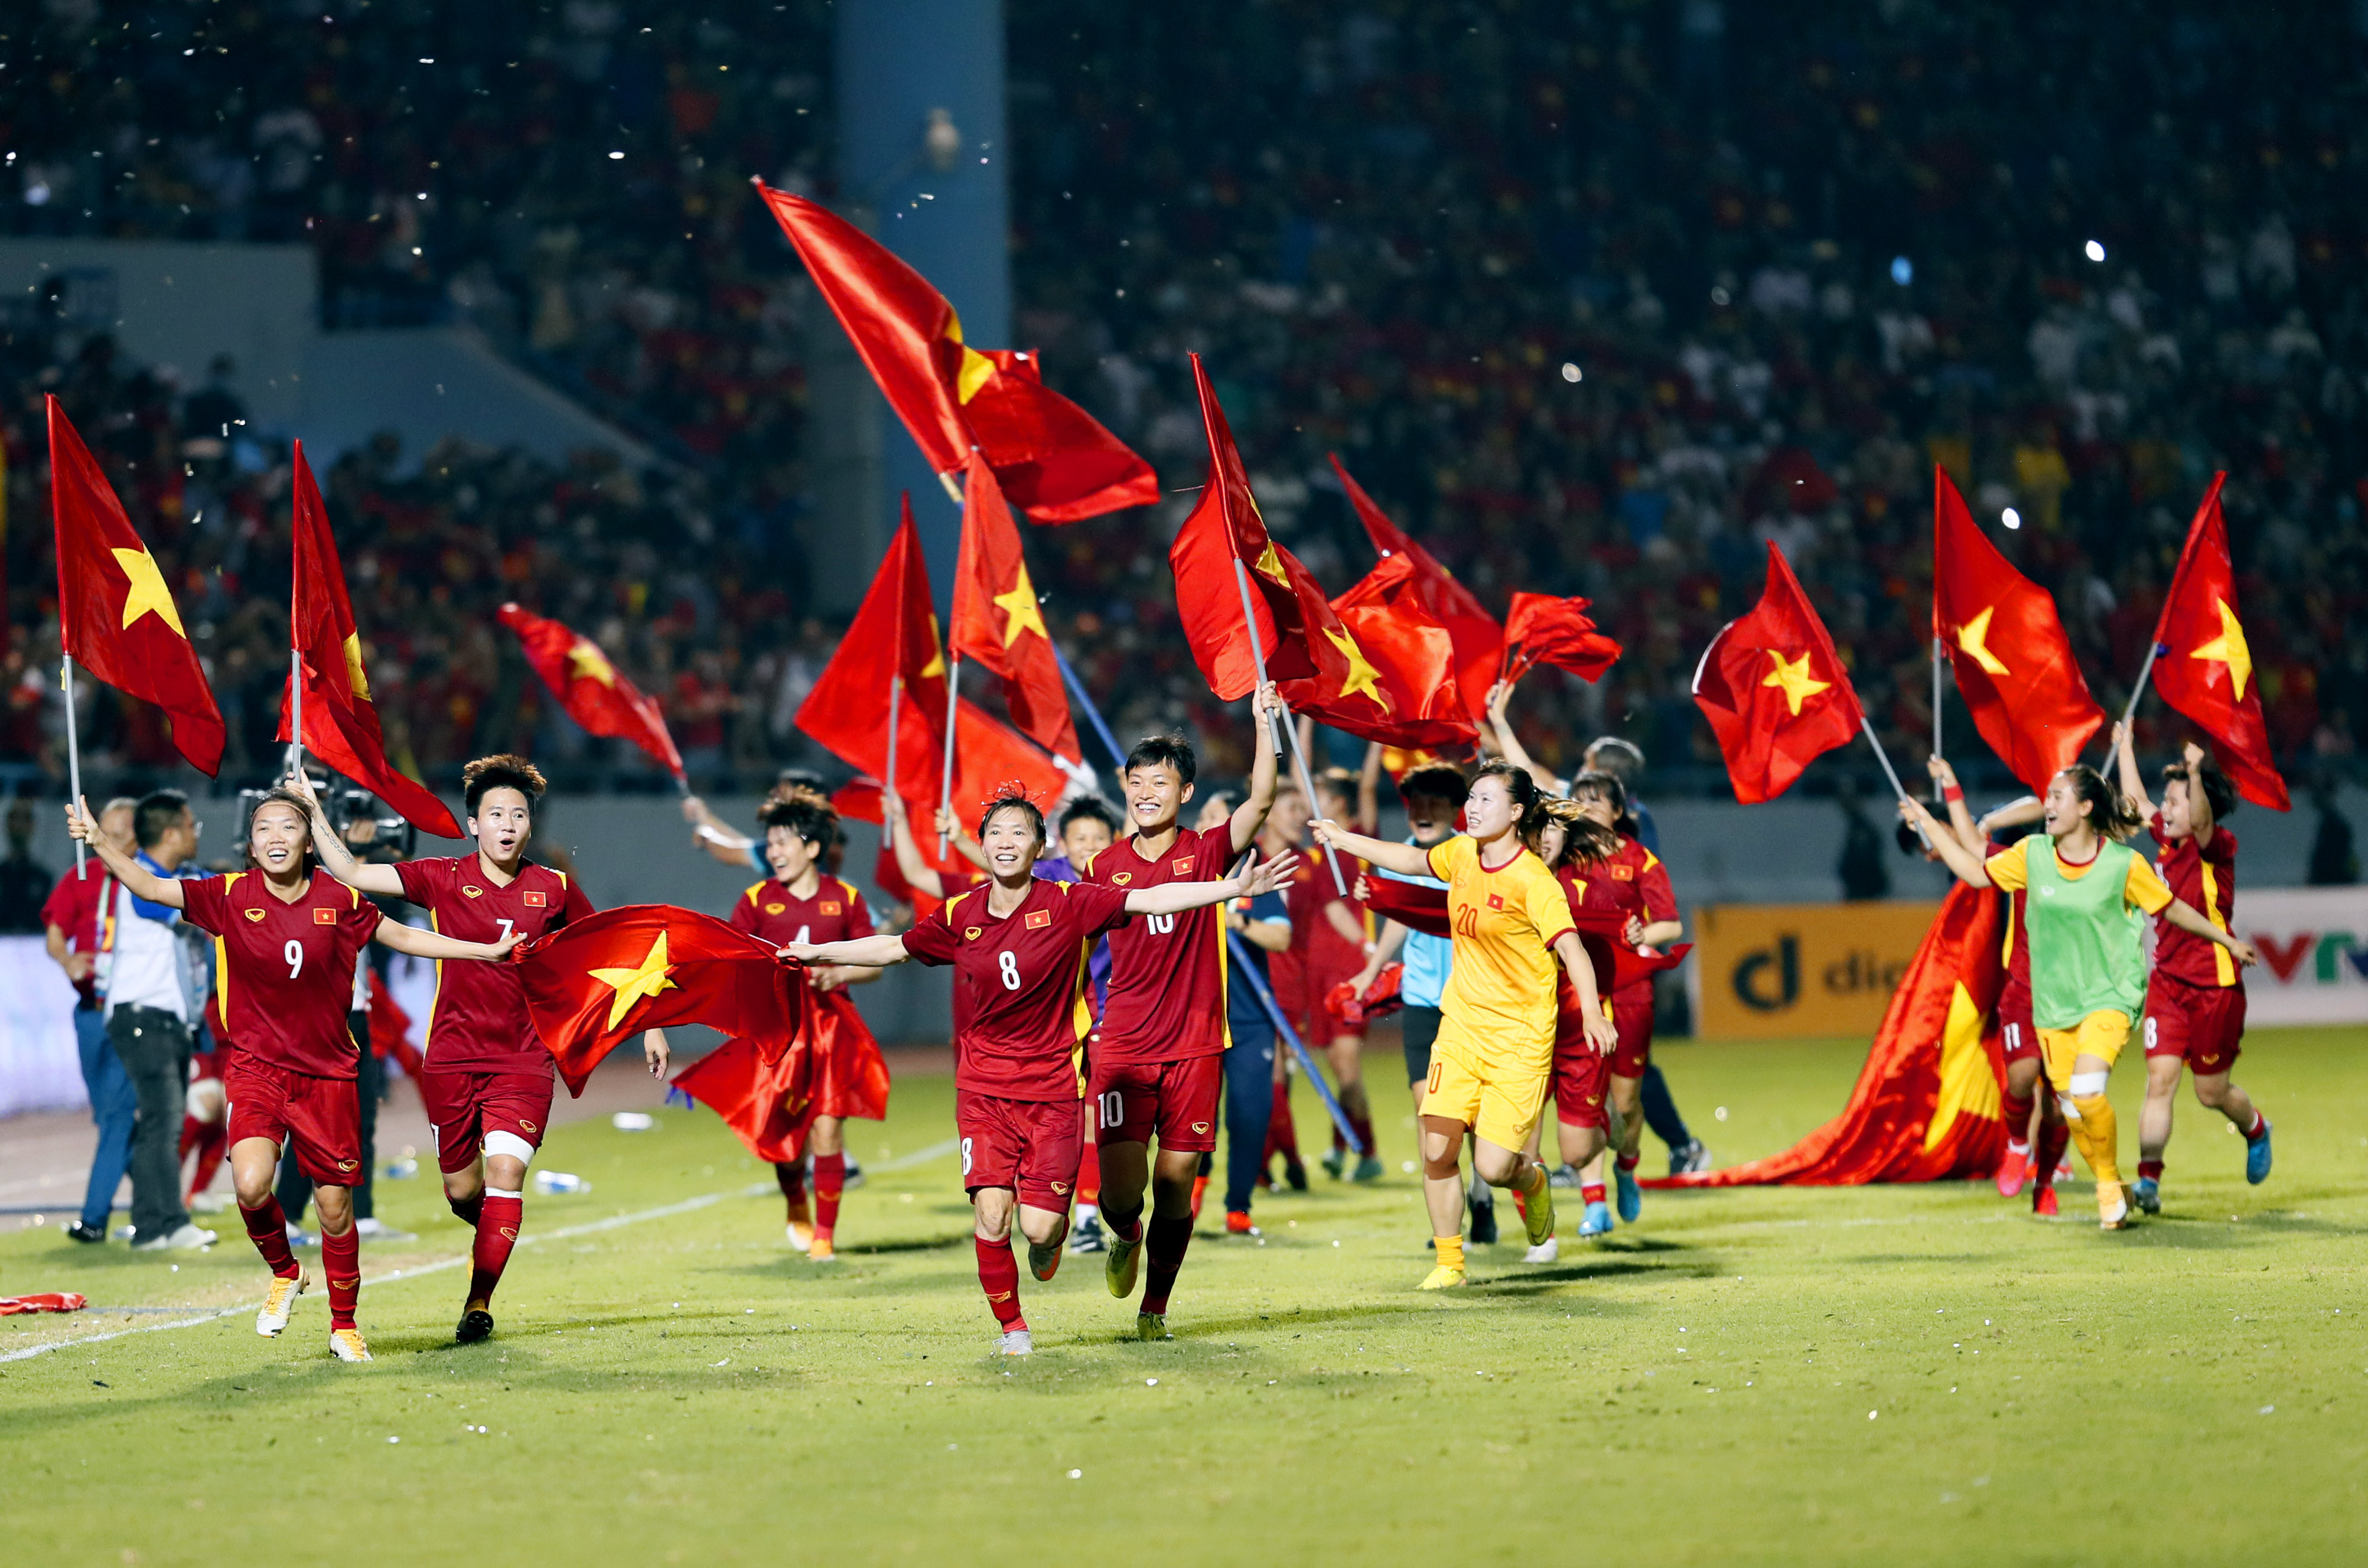 Tuyển nữ Việt Nam đang là một trong những đội bóng nổi tiếng, thành công nhất trong lịch sử bóng đá Việt Nam. Hãy xem các hình ảnh và đánh giá về kỹ năng và tinh thần thi đấu của đội bóng này để cảm nhận sự tuyệt vời của đội tuyển nữ Việt Nam.